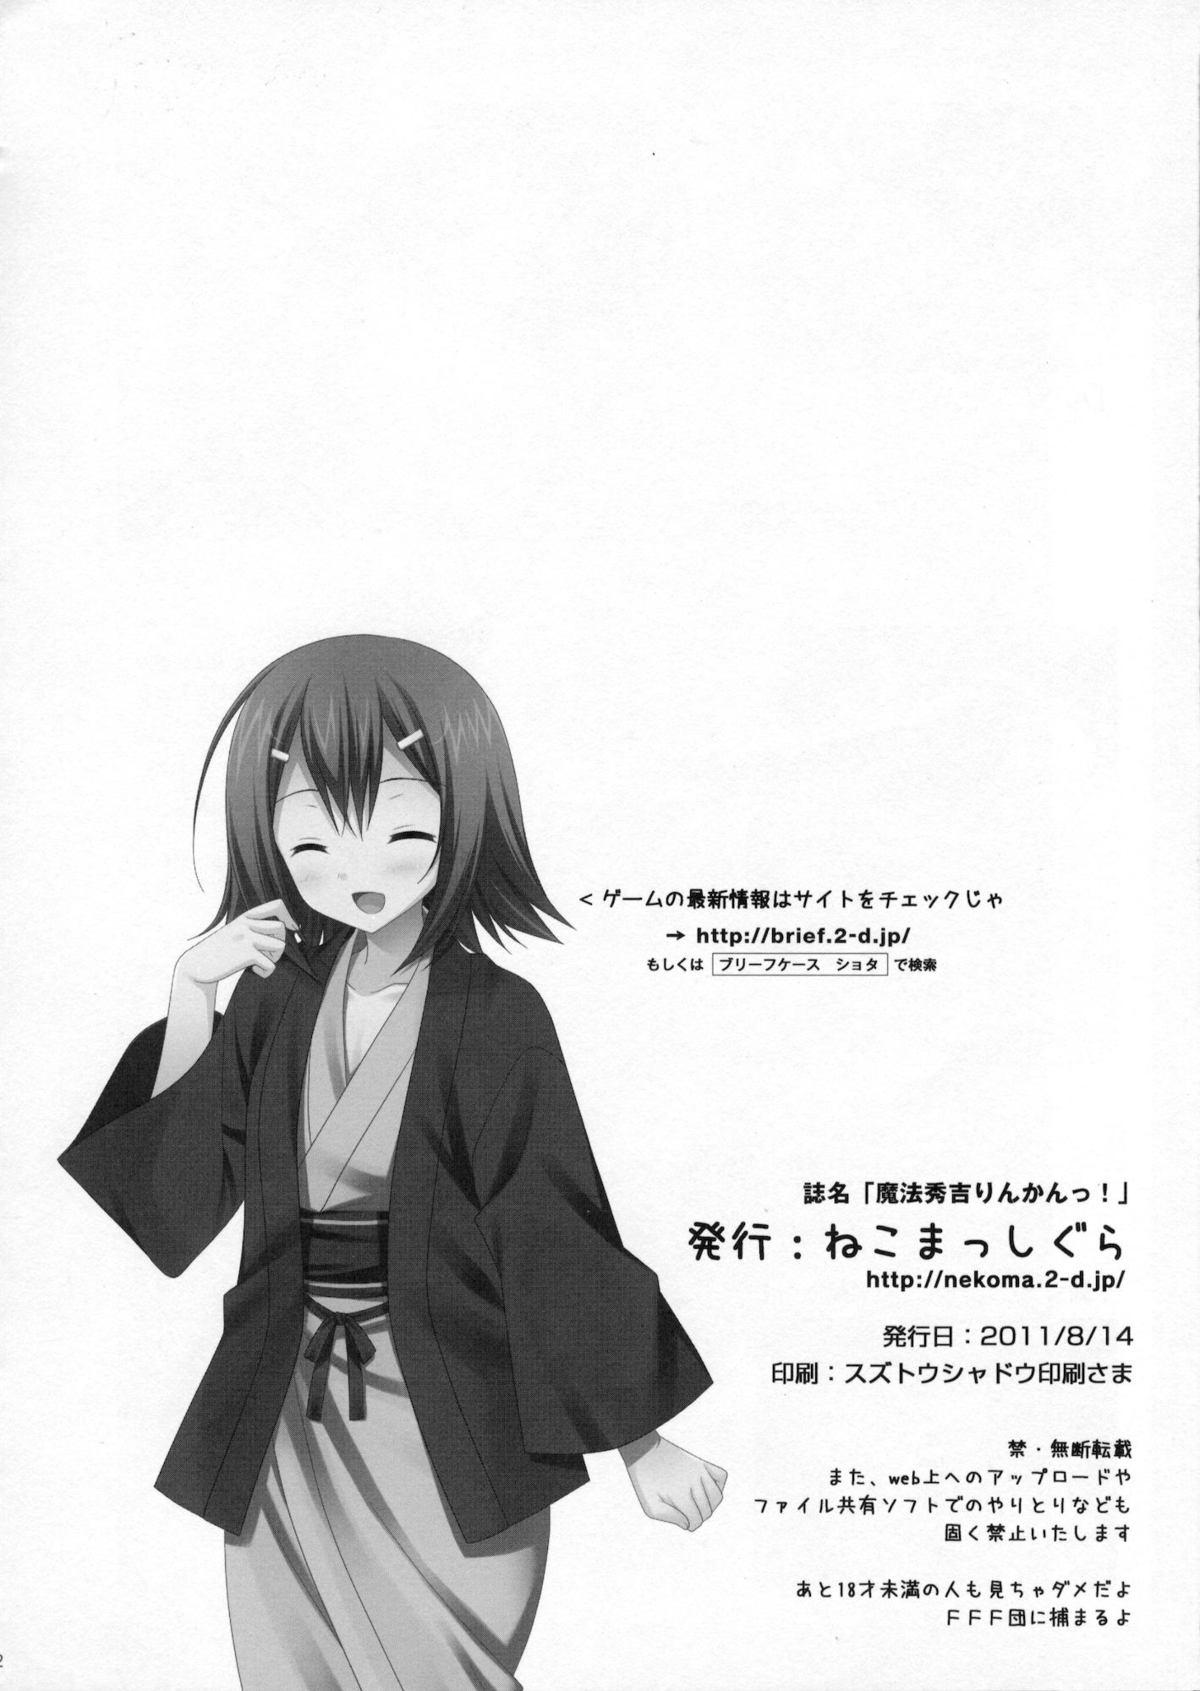 Tanned Mahou Hideyoshi Rinkan! - Baka to test to shoukanjuu Kiss - Page 21